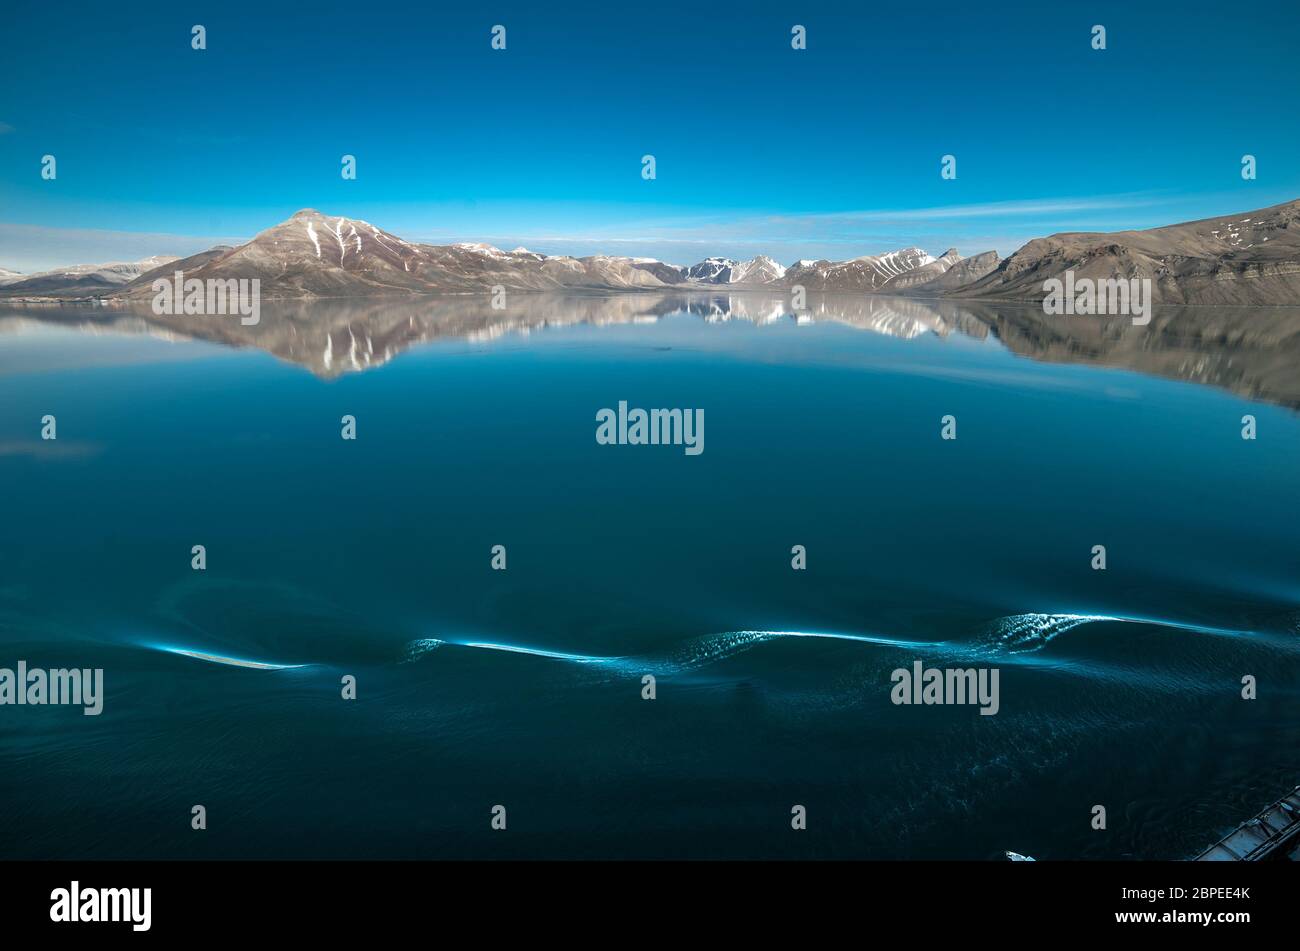 Kreuzfahrtschiffs an Kreuzfahrtschiffs in den Fjorden Norwegens mit Spiegelung von Berge im Wasser Foto Stock